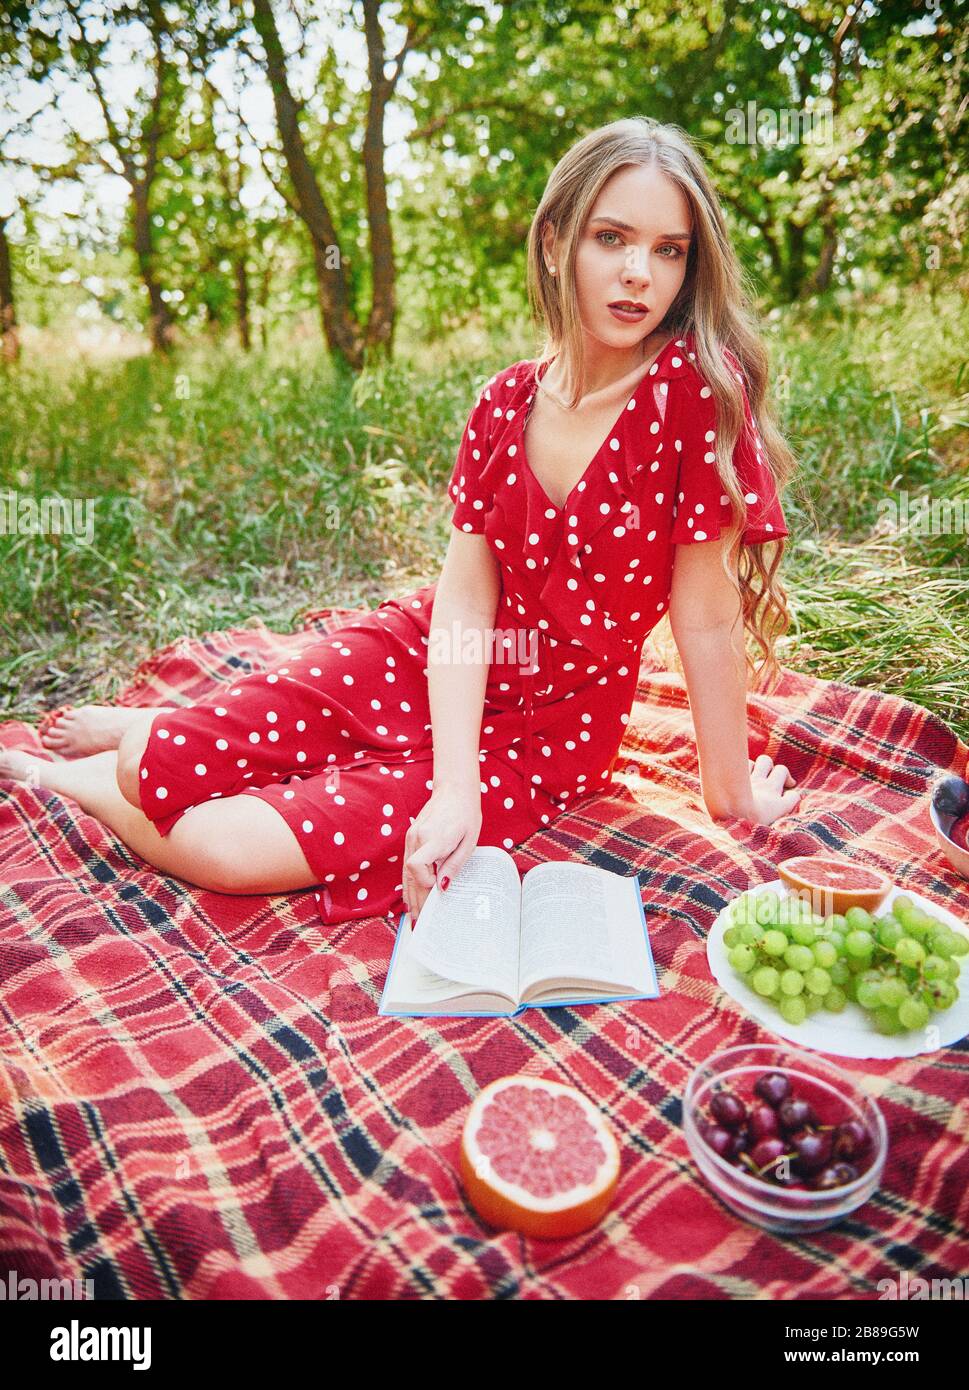 Escena de picnic: Linda chica sentada en un plaid y leyendo un libro en  grove. Retrato al aire libre de una hermosa mujer joven con vestido rojo.  Efecto de la película clásica